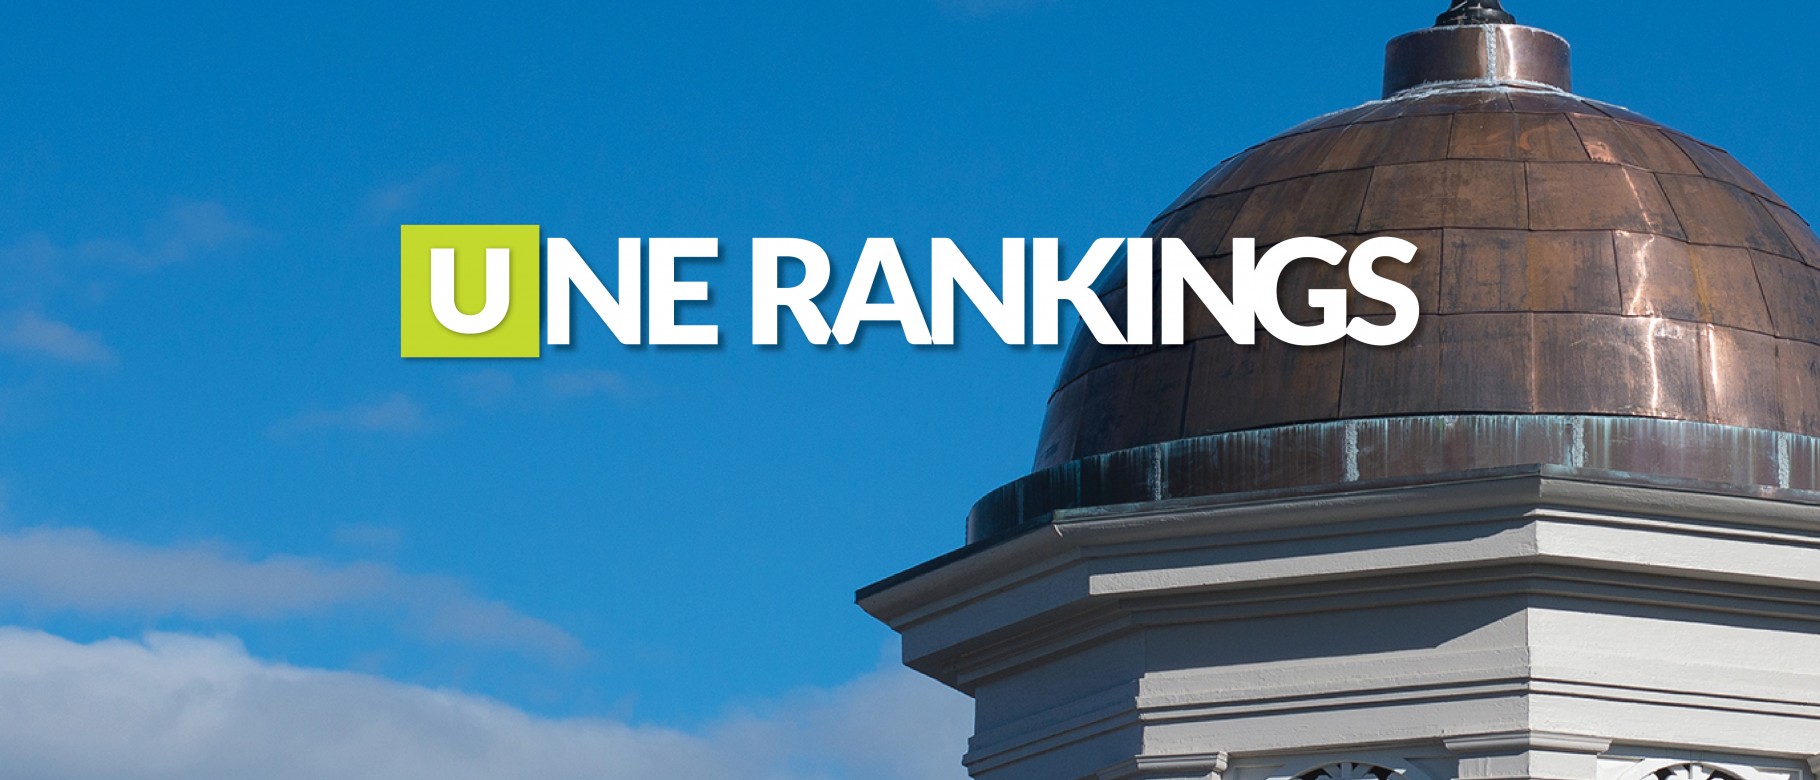 UNE Rankings image